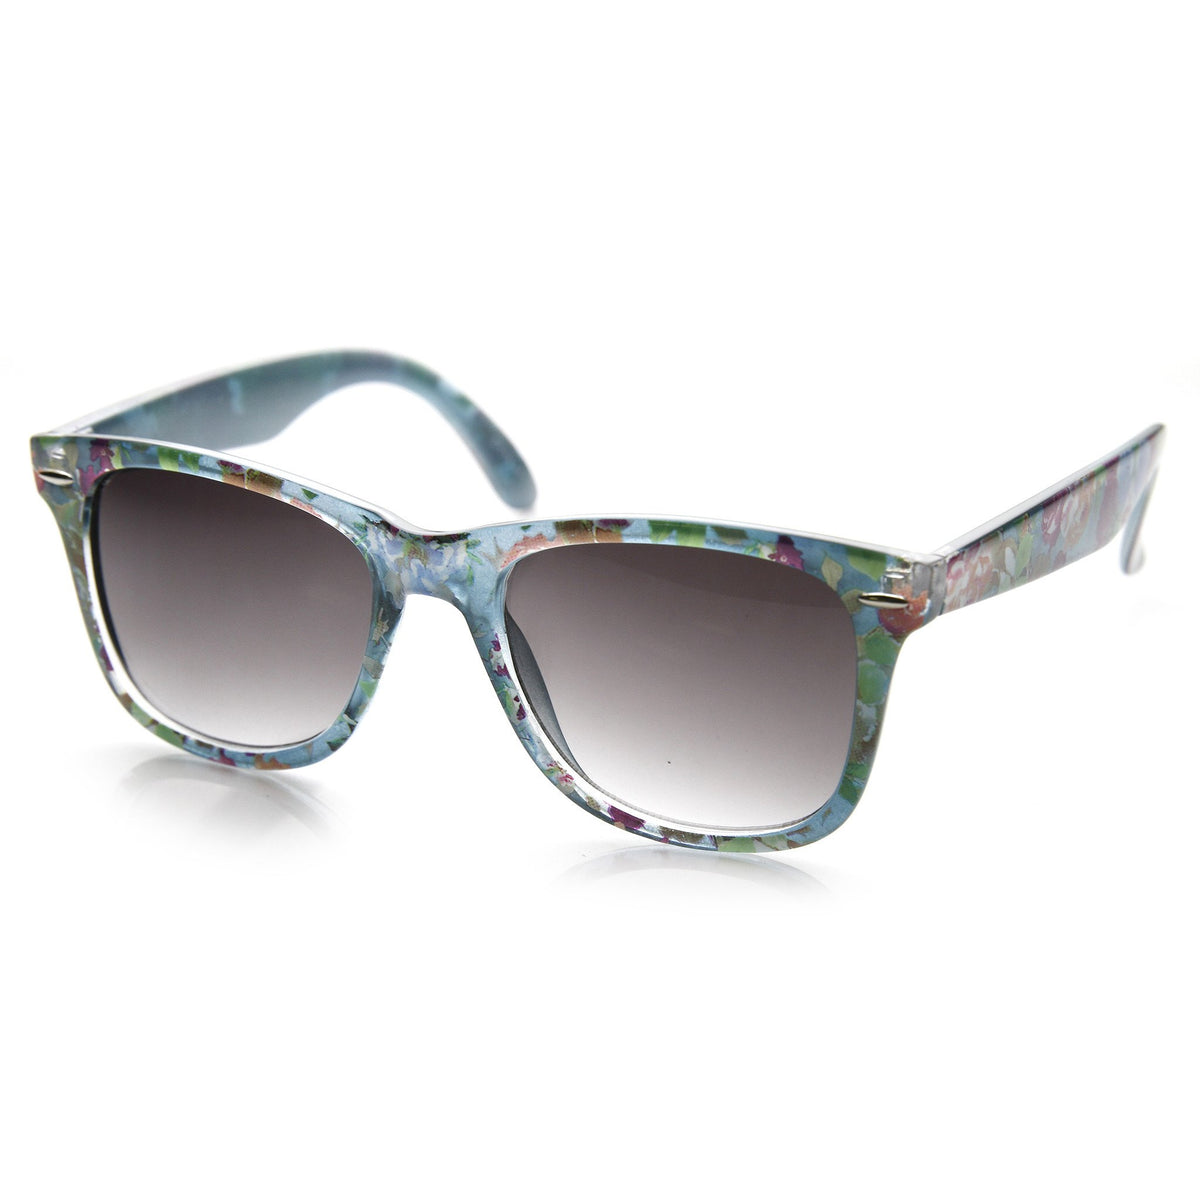 Women's Hippie Indie Floral Flower Wayfarer Sunglasses - zeroUV